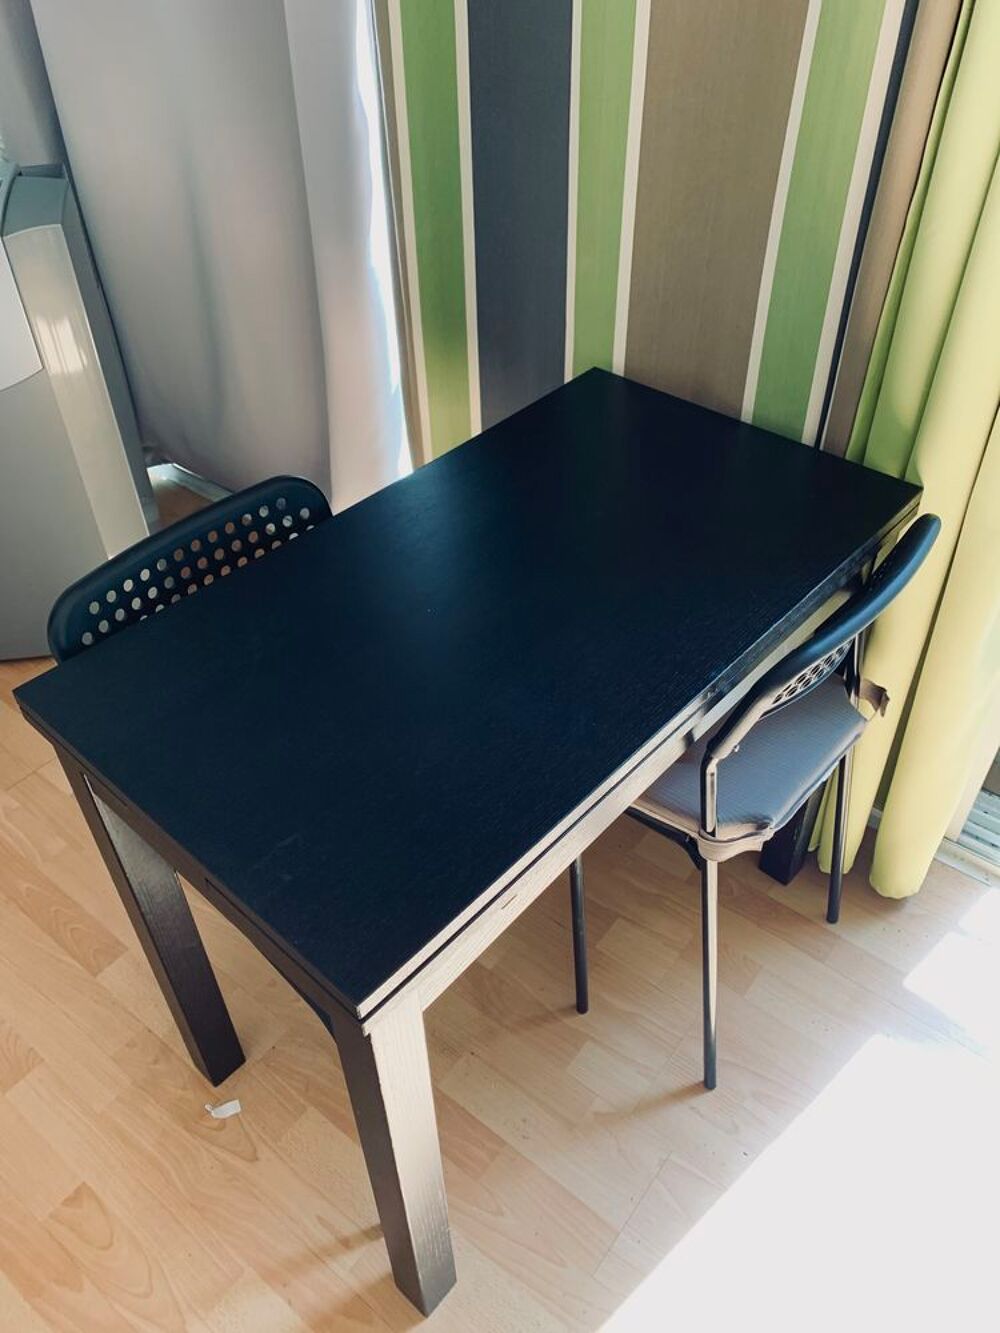 Table extensible IKEA noire plus deux chaises. Meubles